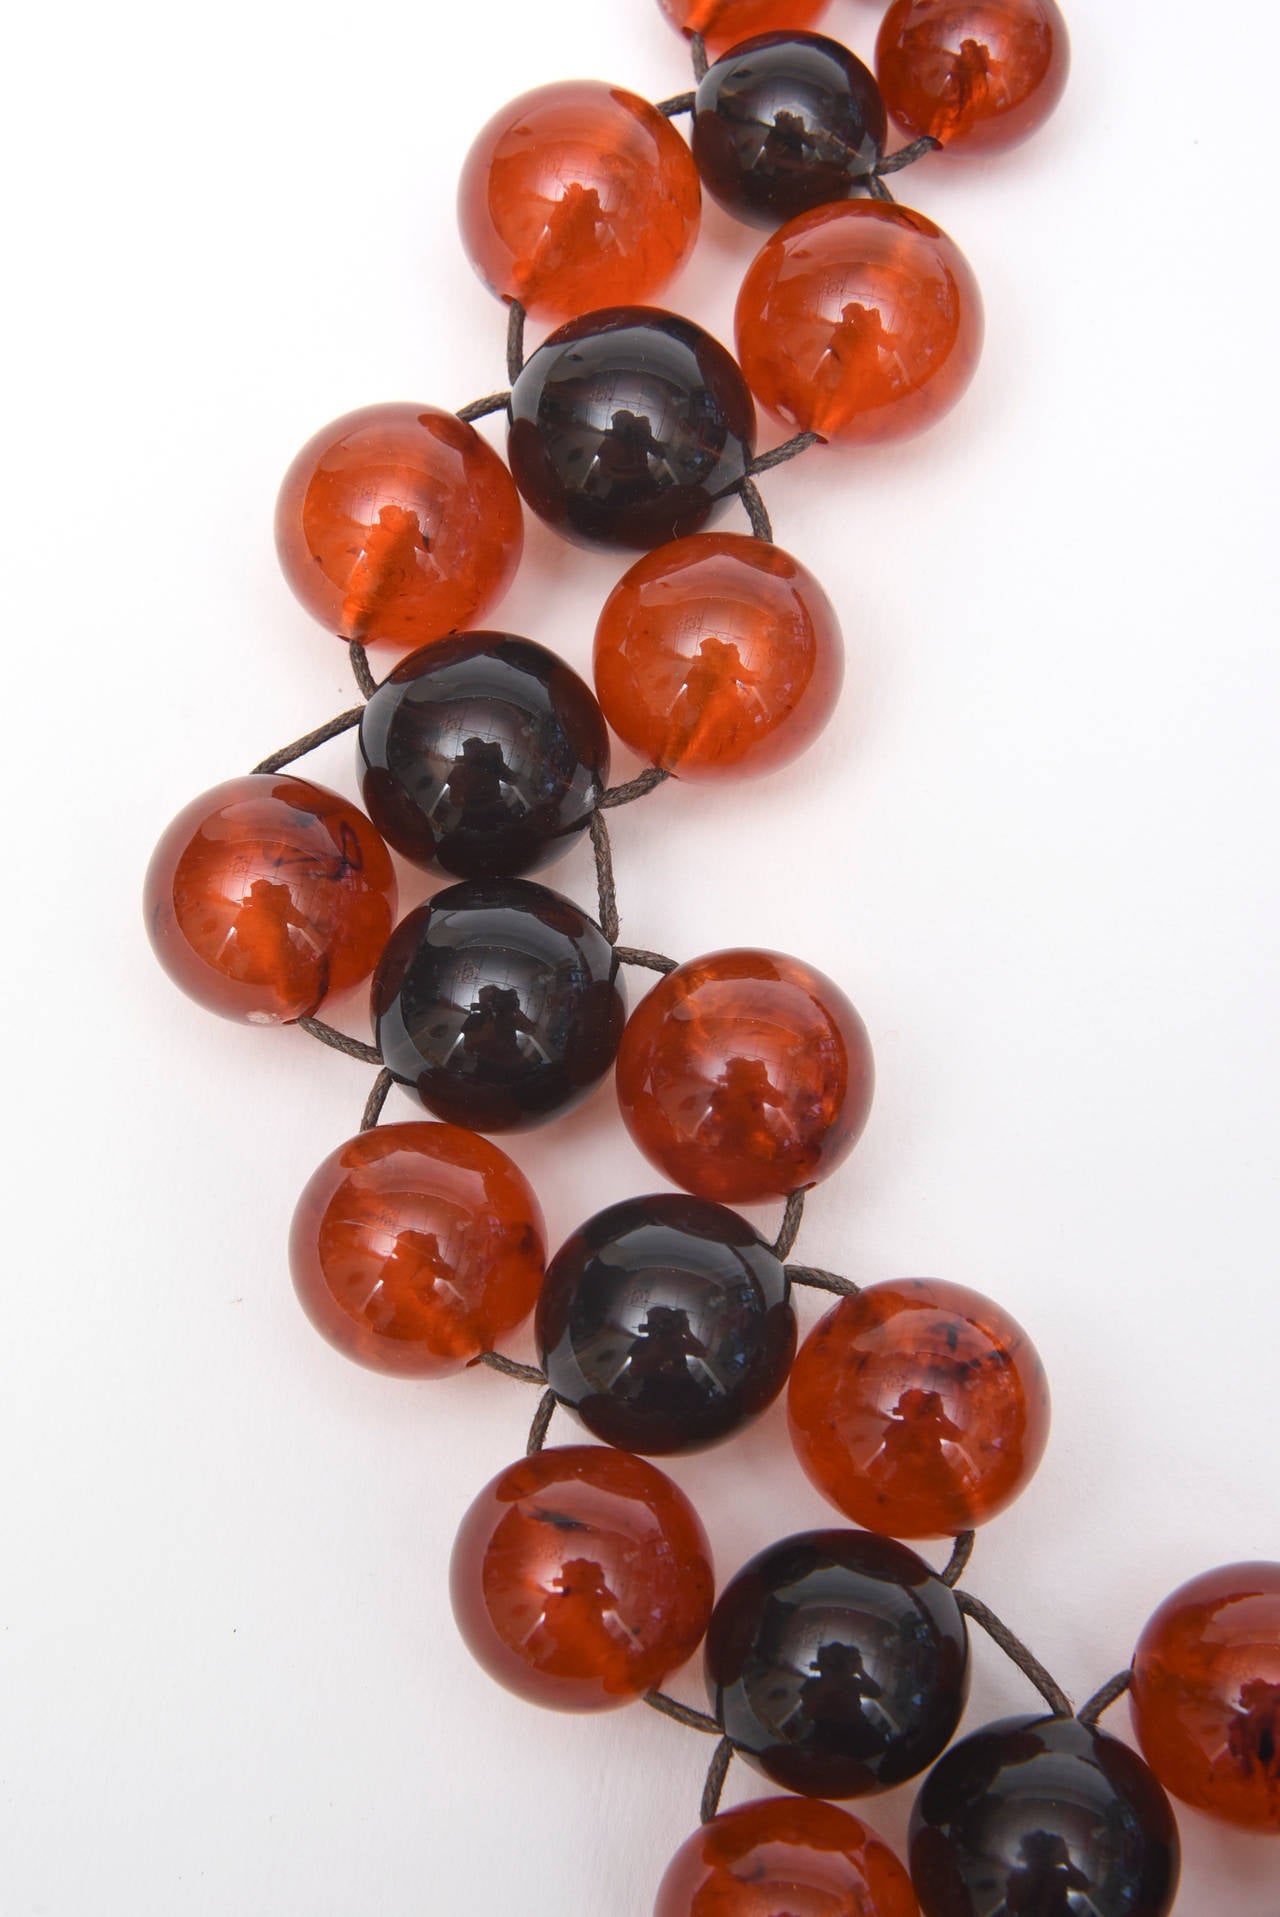 Orange-bernsteinfarbene und schwarz-violette Harzkugeln machen diese witzige Vintage-Halskette zu einem echten Hingucker.  Sie ist an einem Draht befestigt und mit 3 gestaffelten Reihen verbunden. Die Farben sind perfekt für alle Jahreszeiten Au